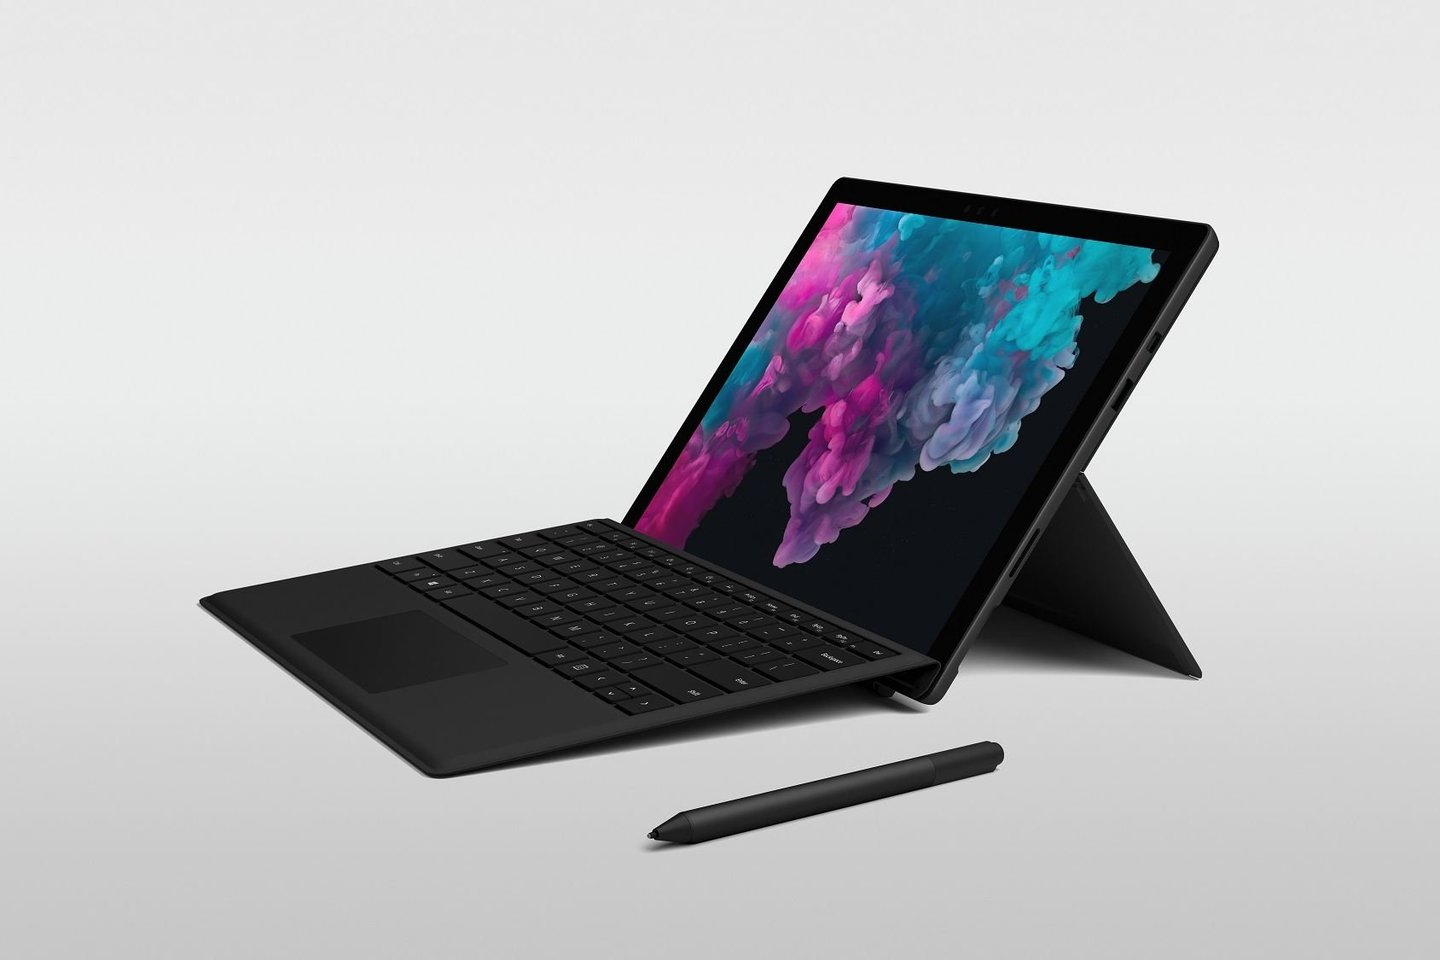  Verslo klientai Lietuvoje galės įsigyti jiems skirtą hibridinį kompiuterį „Surface Pro 6“.<br> „Microsoft“